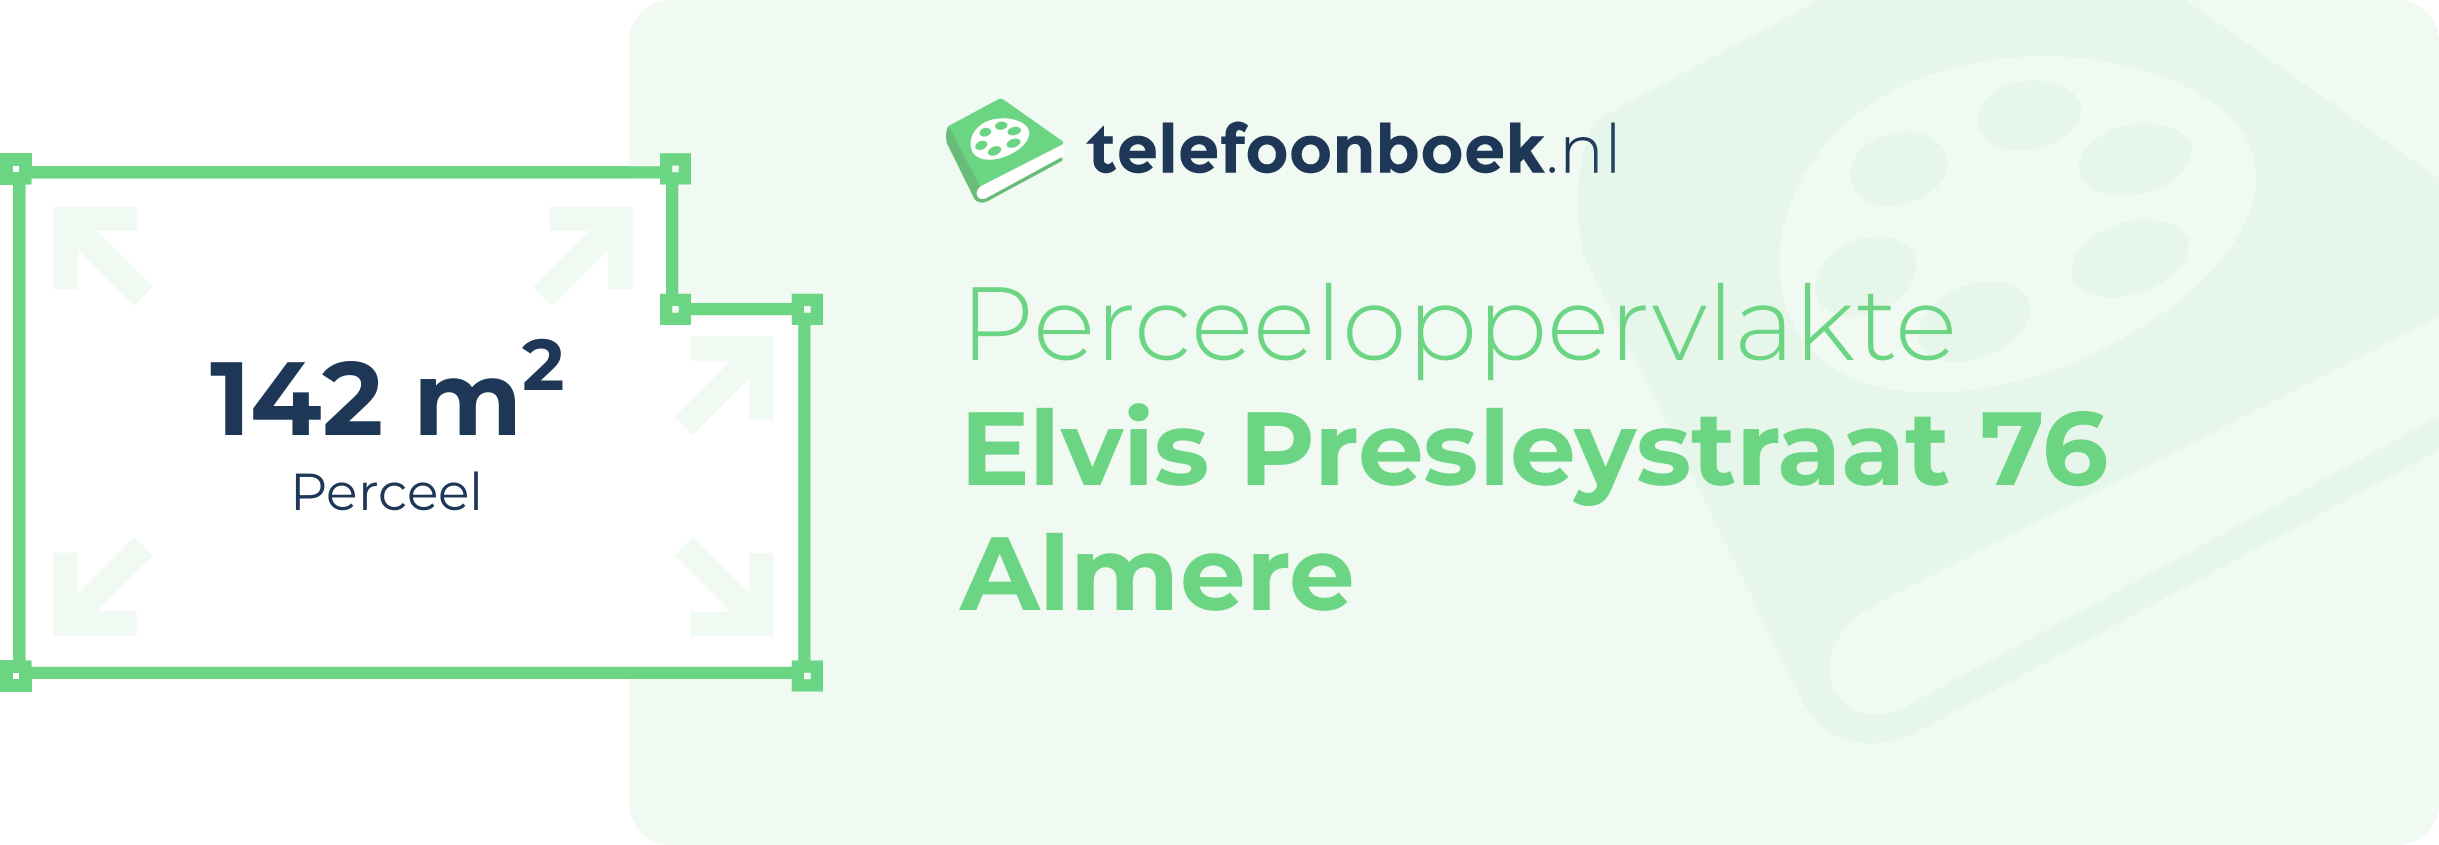 Perceeloppervlakte Elvis Presleystraat 76 Almere